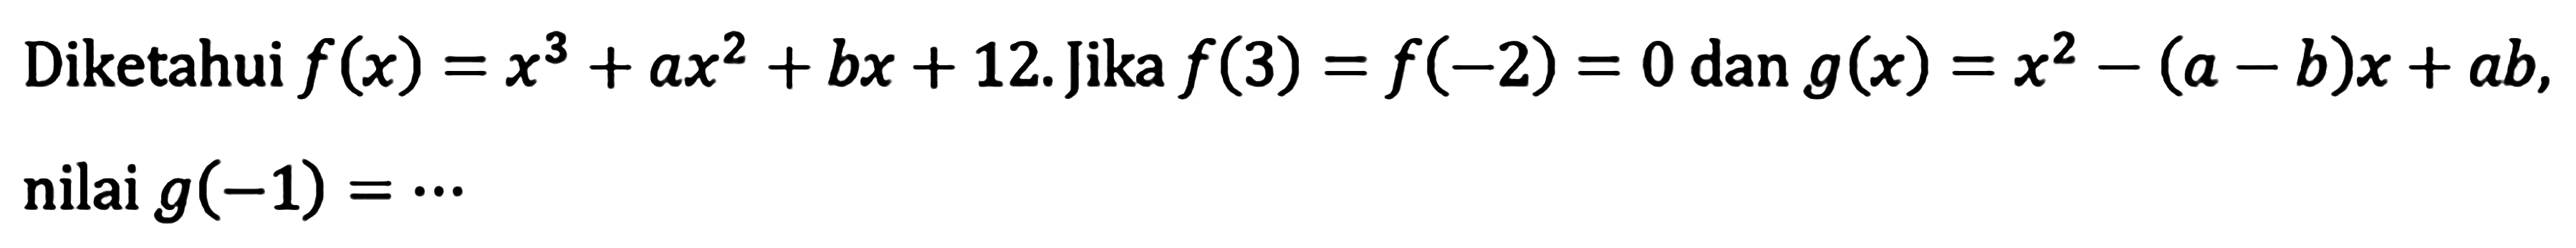 Diketahui f(x)=x^3+ax^2+bx+12. Jika f(3)=f(-2)=0 dan g(x)=x^2-(a-b)x+ab, nilai g(-1)=...